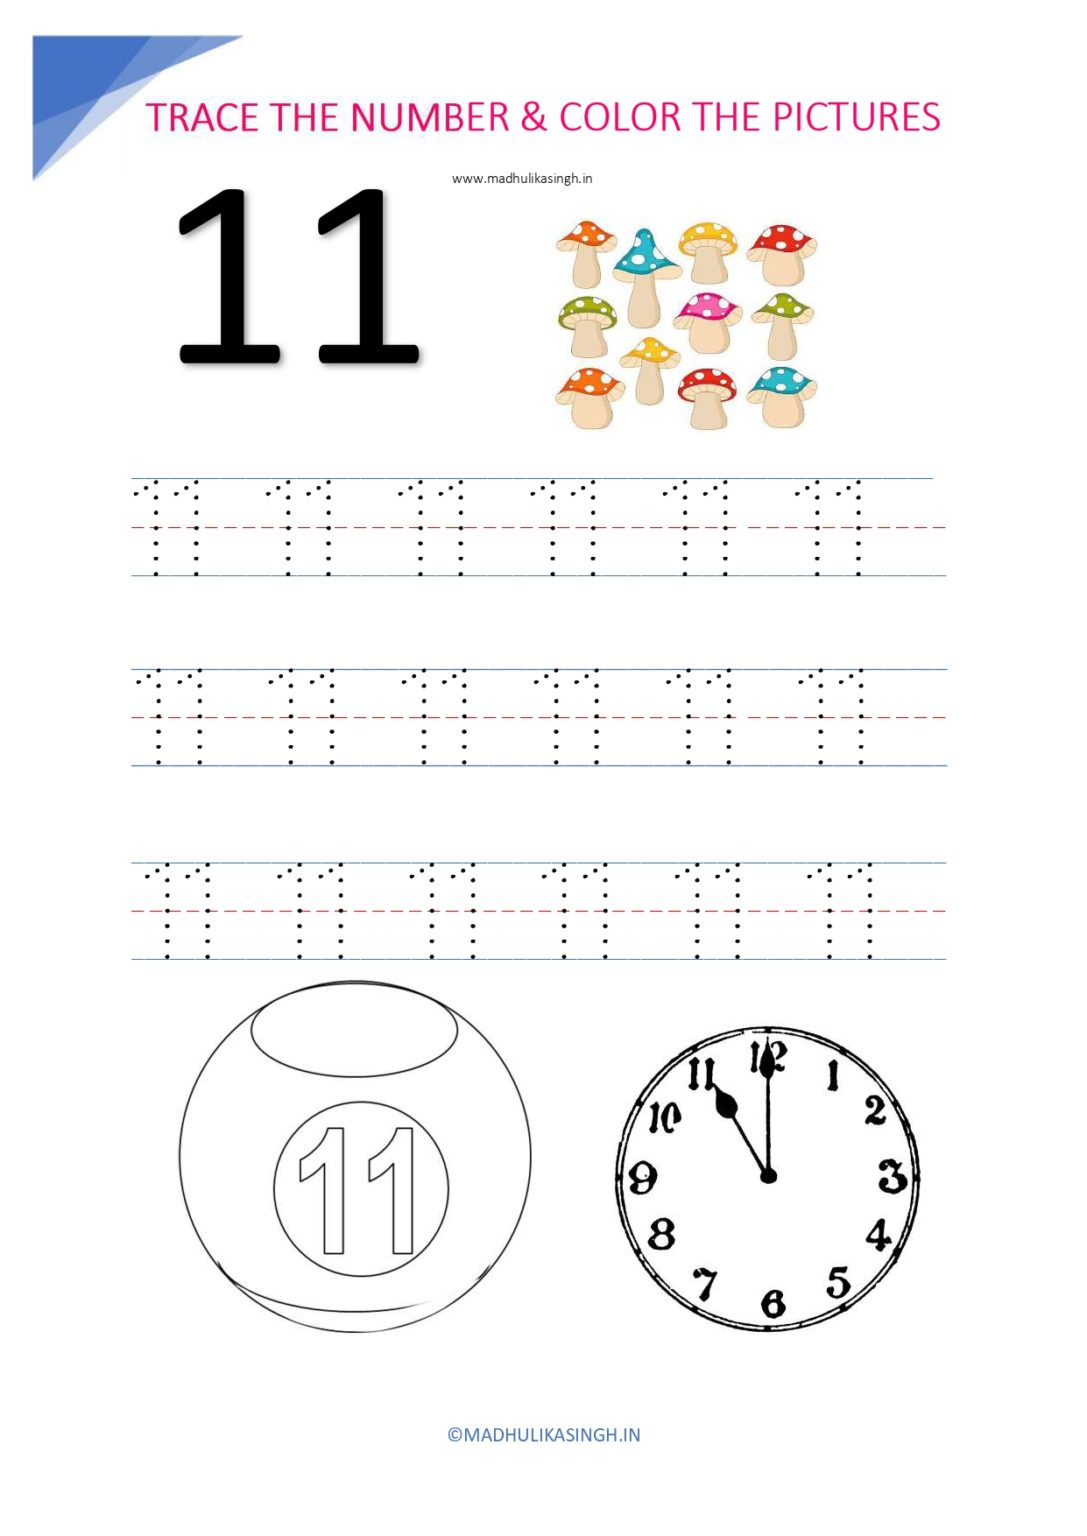 tracing-numbers-1-10-to-print-tracing-worksheets-preschool-preschool